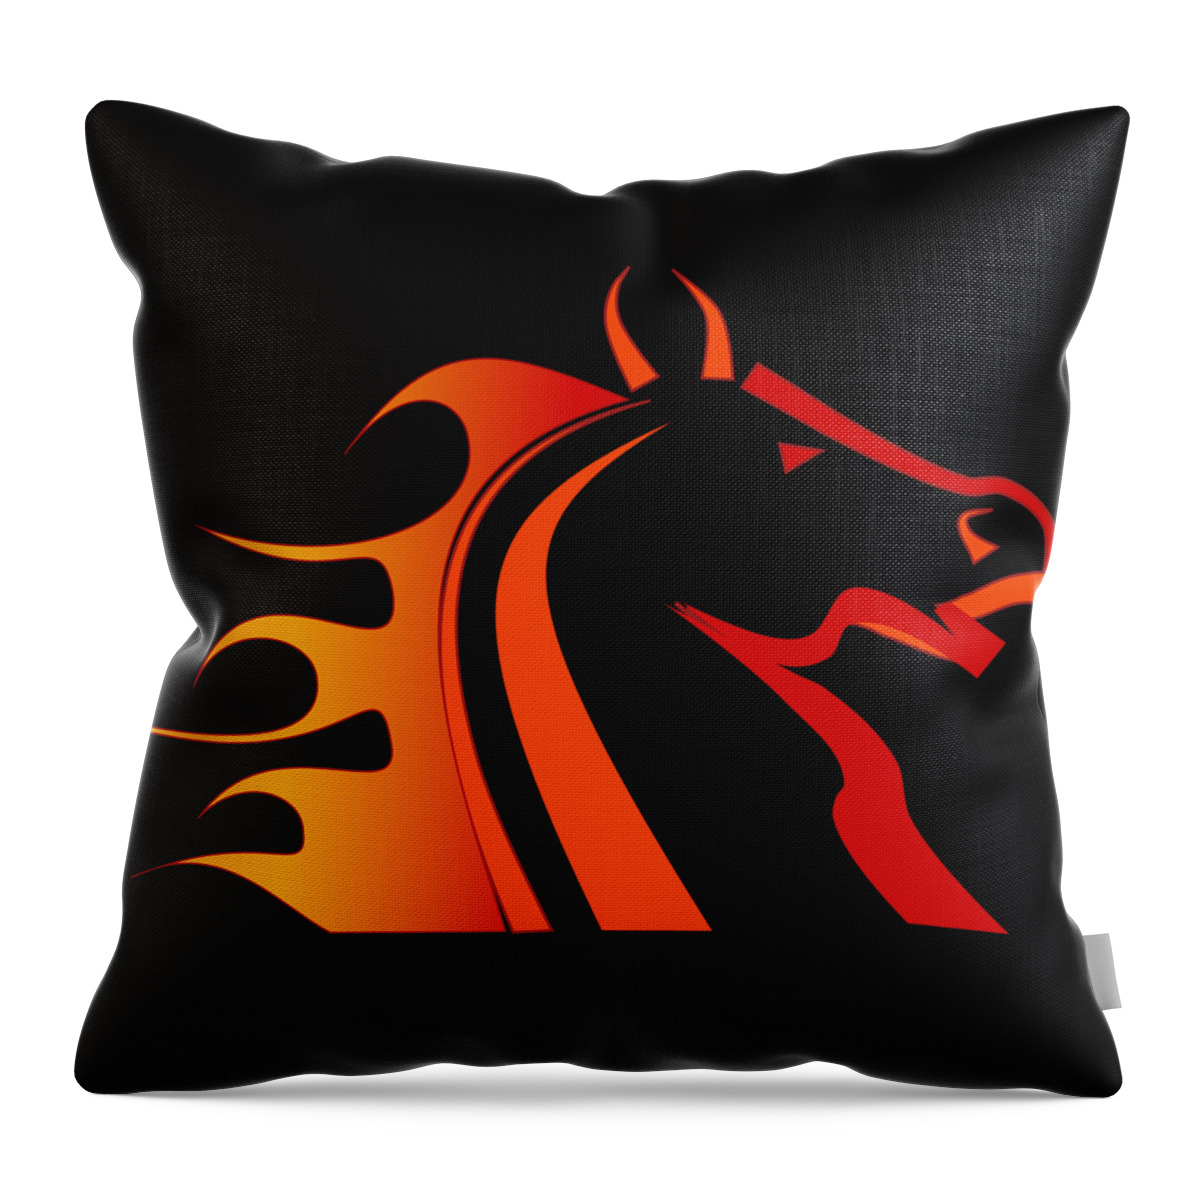 Horse Throw Pillow featuring the digital art Fire Horse by Scott Davis